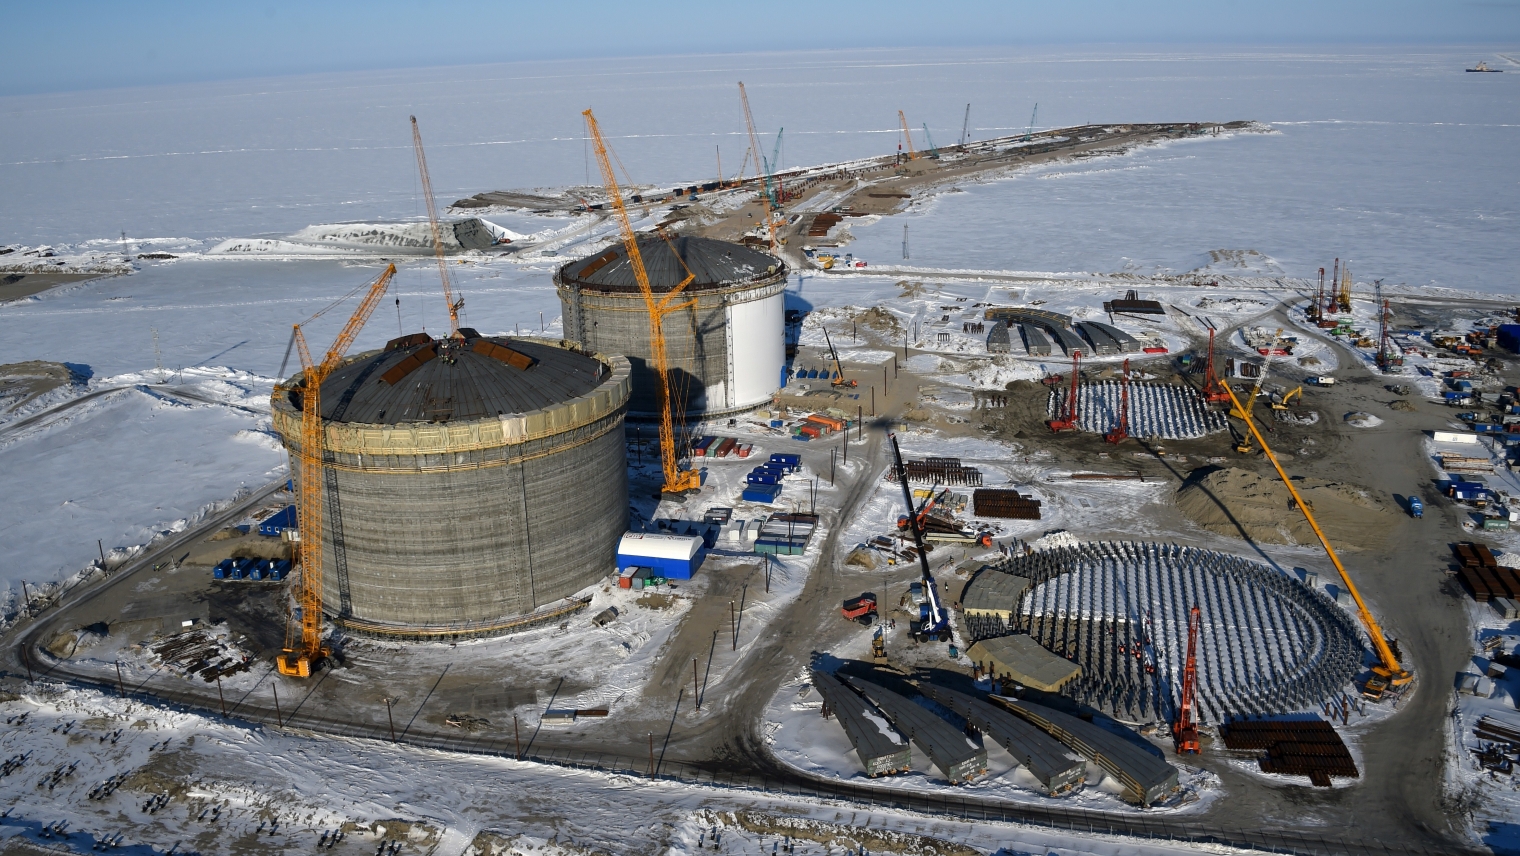 Развитие газовой промышленности в России. На Дальнем востоке построят 10 новых СПГ заводов.